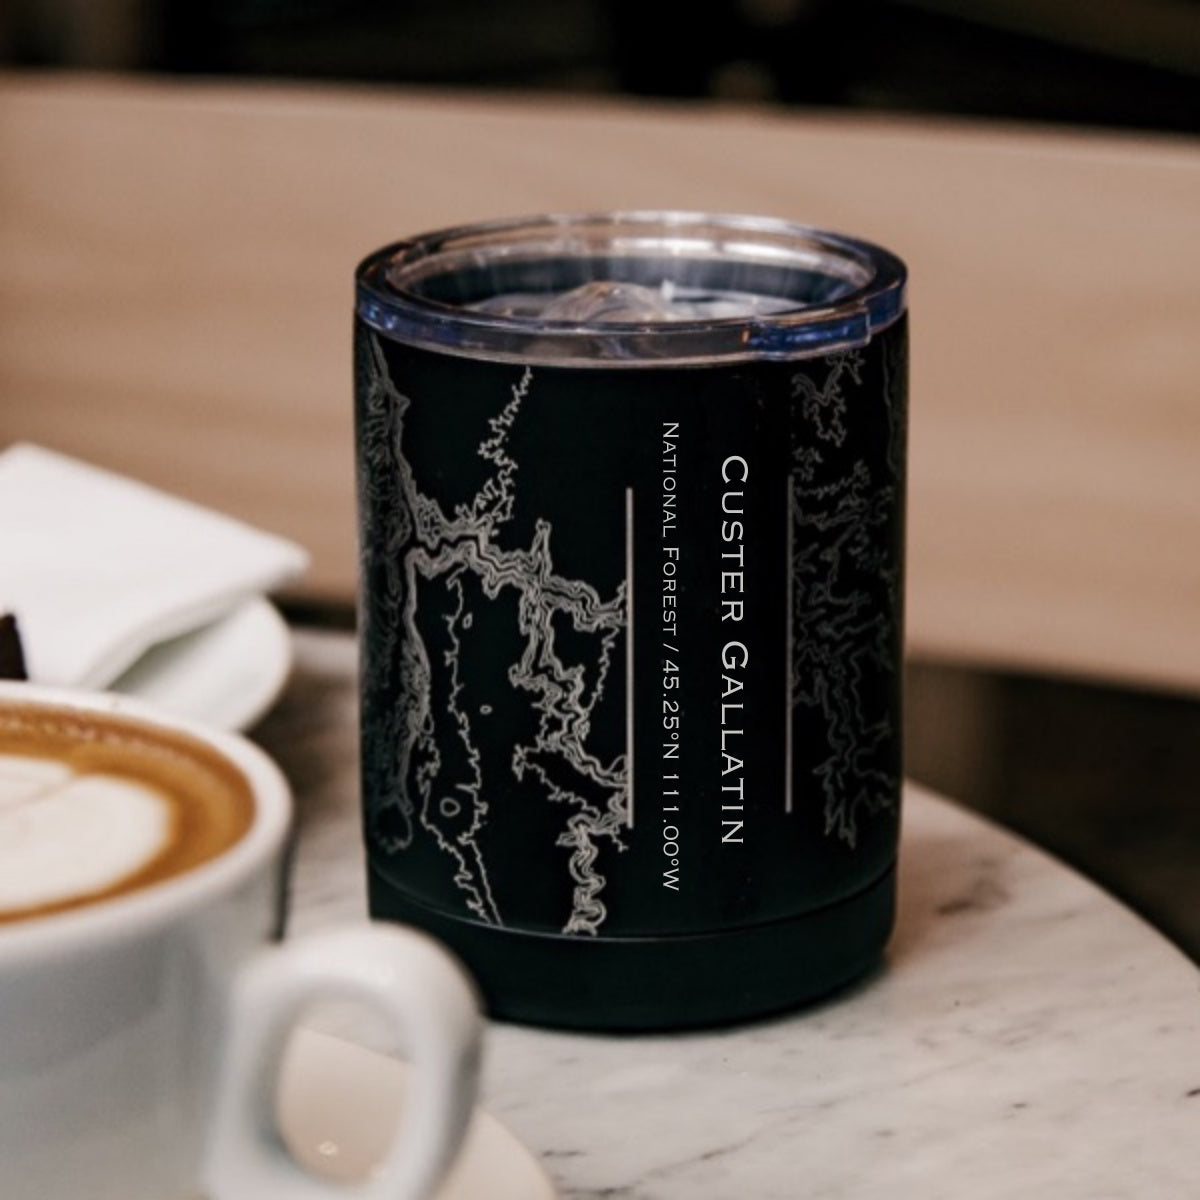 Terrain Espresso Mug / Sand + sett – One Mercantile / Sett